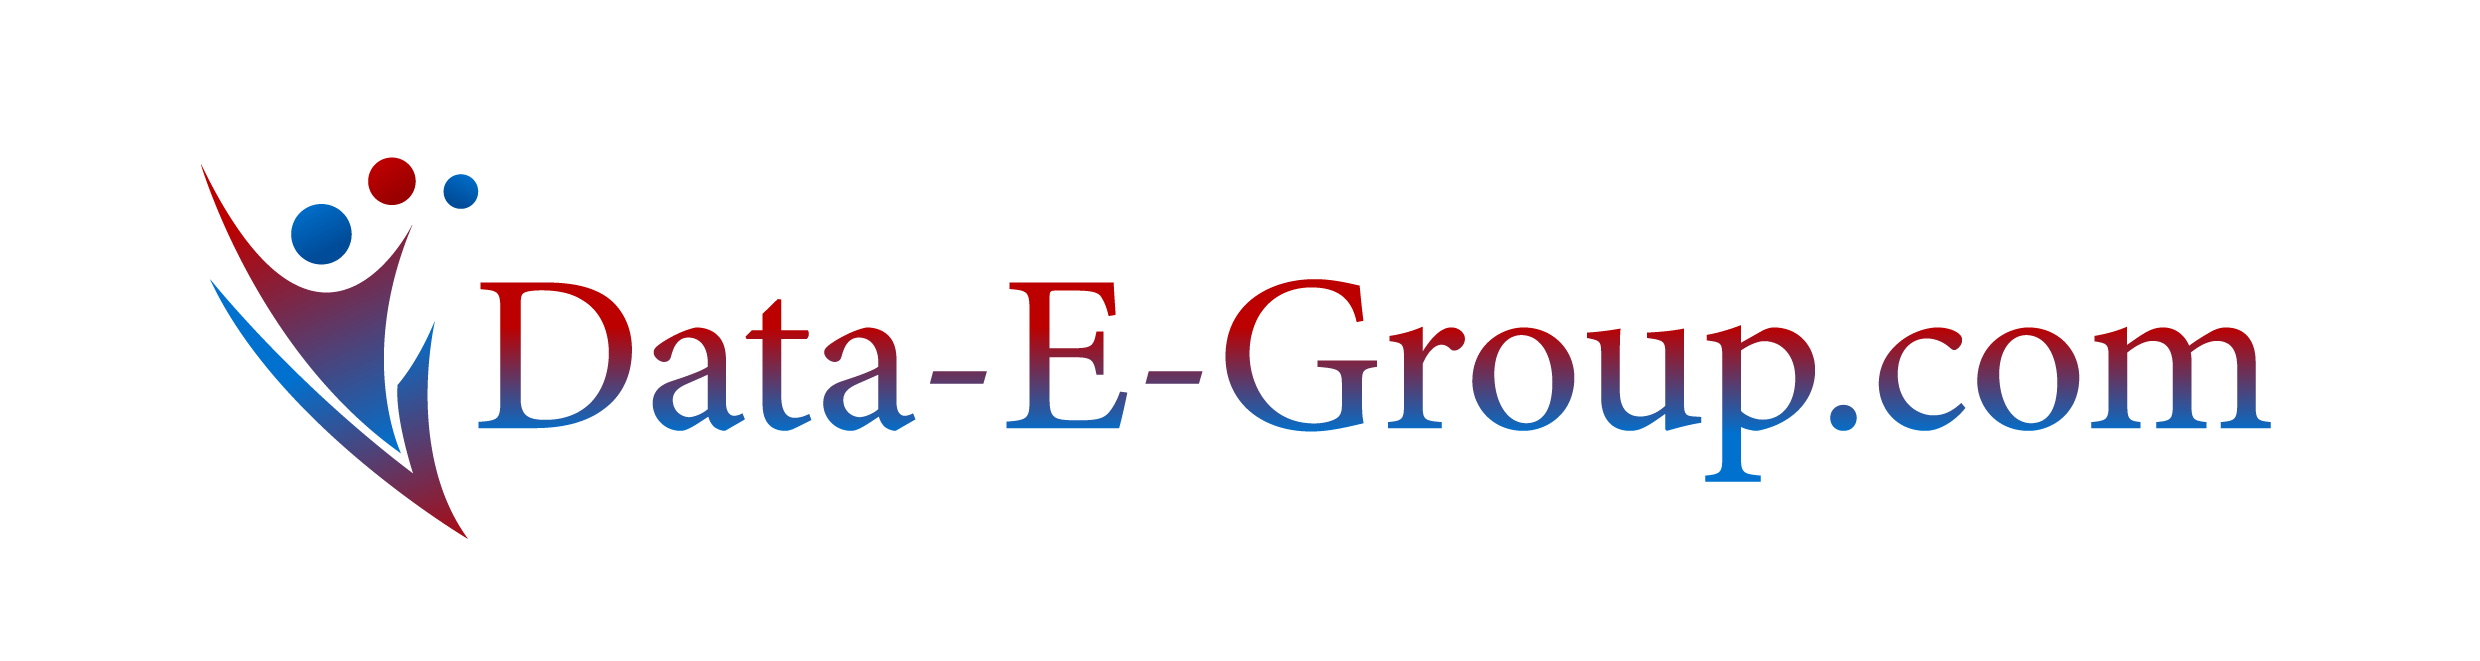 data-e-group.com